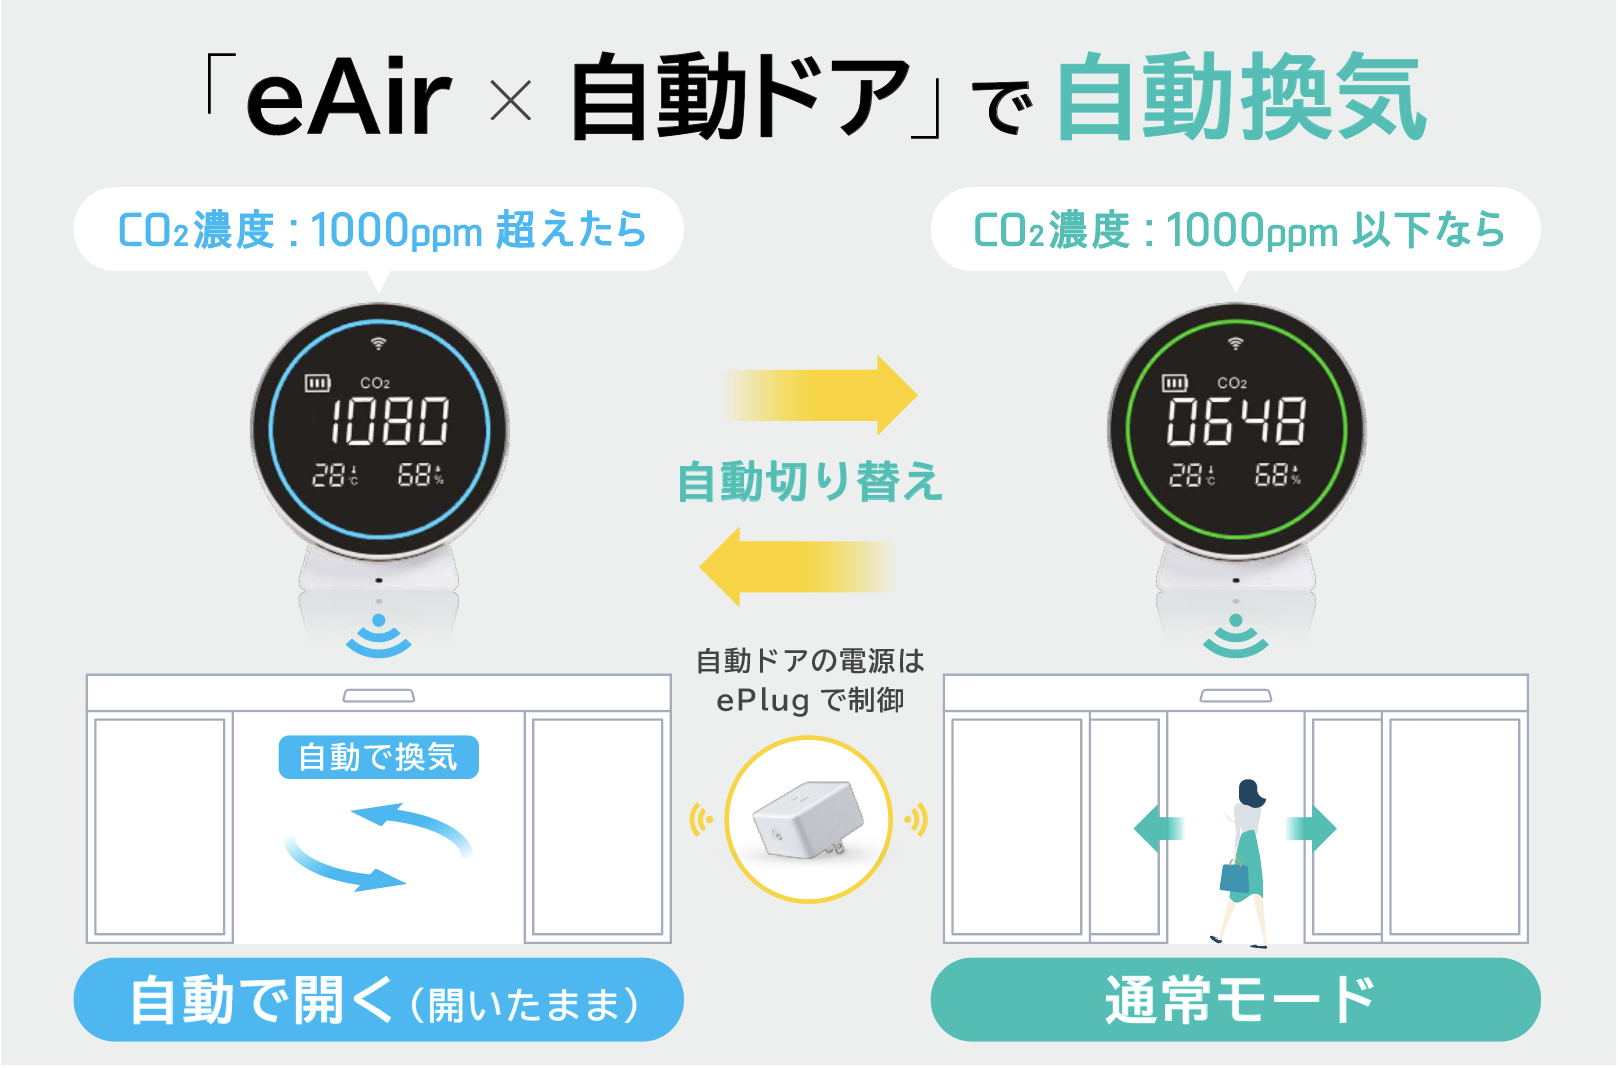 日本初・CO2濃度に合わせて自動ドアを開閉する
「換気用IoTドア」の開発と実用化に成功　
～コロナ禍における店舗・施設運営の悩みを解決～